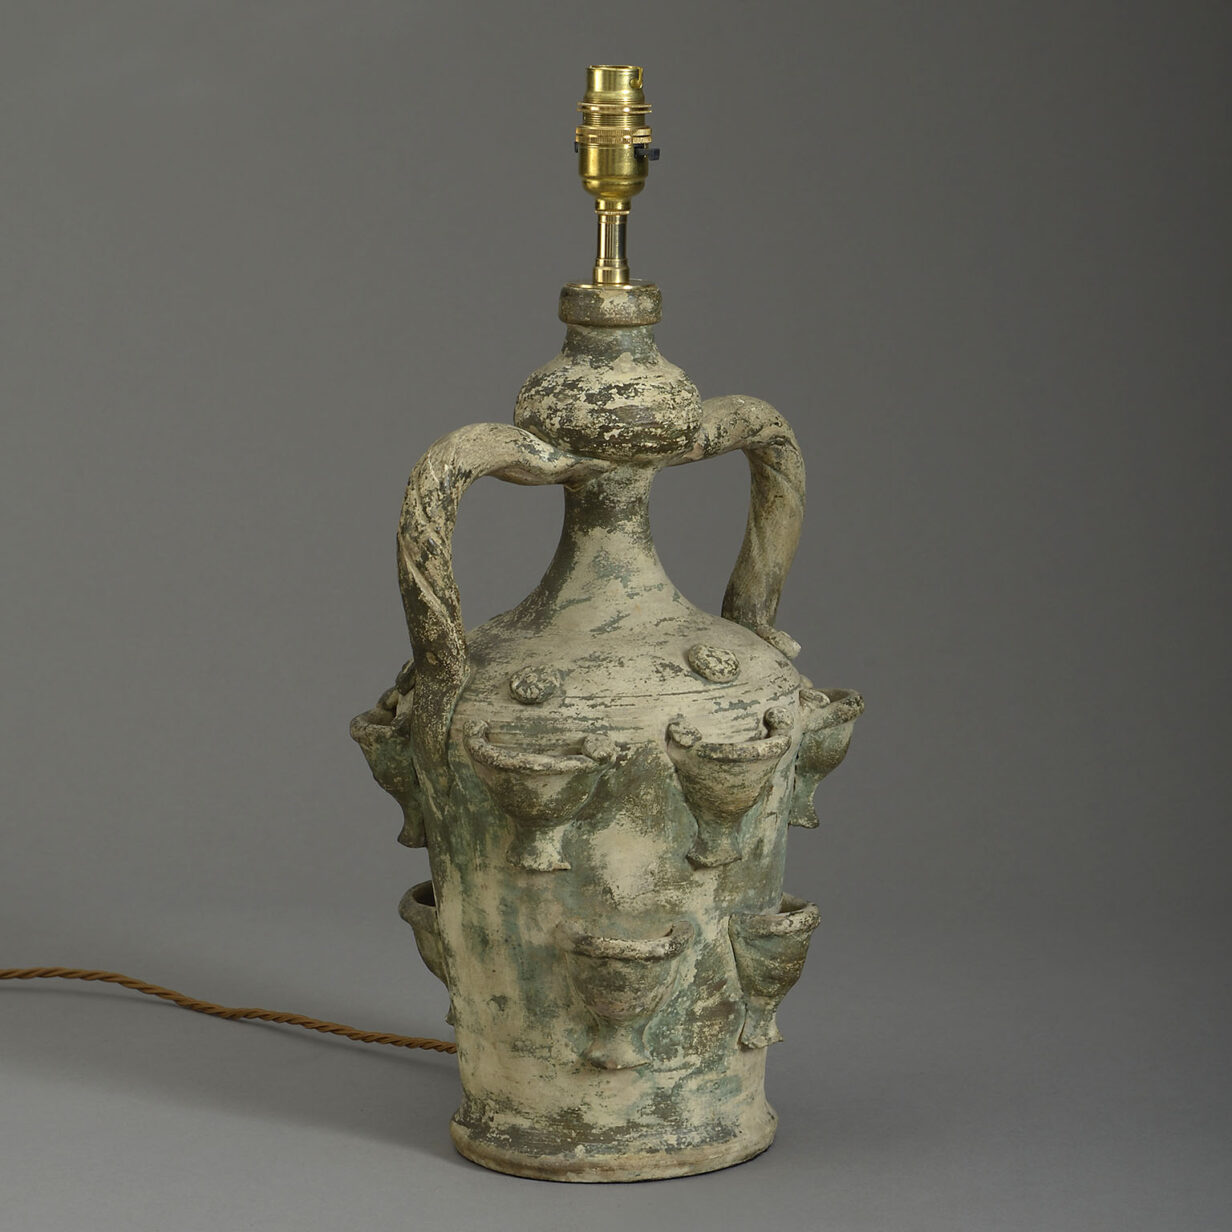 20th Century Terracotta Vase Lamp in The Antique Taste